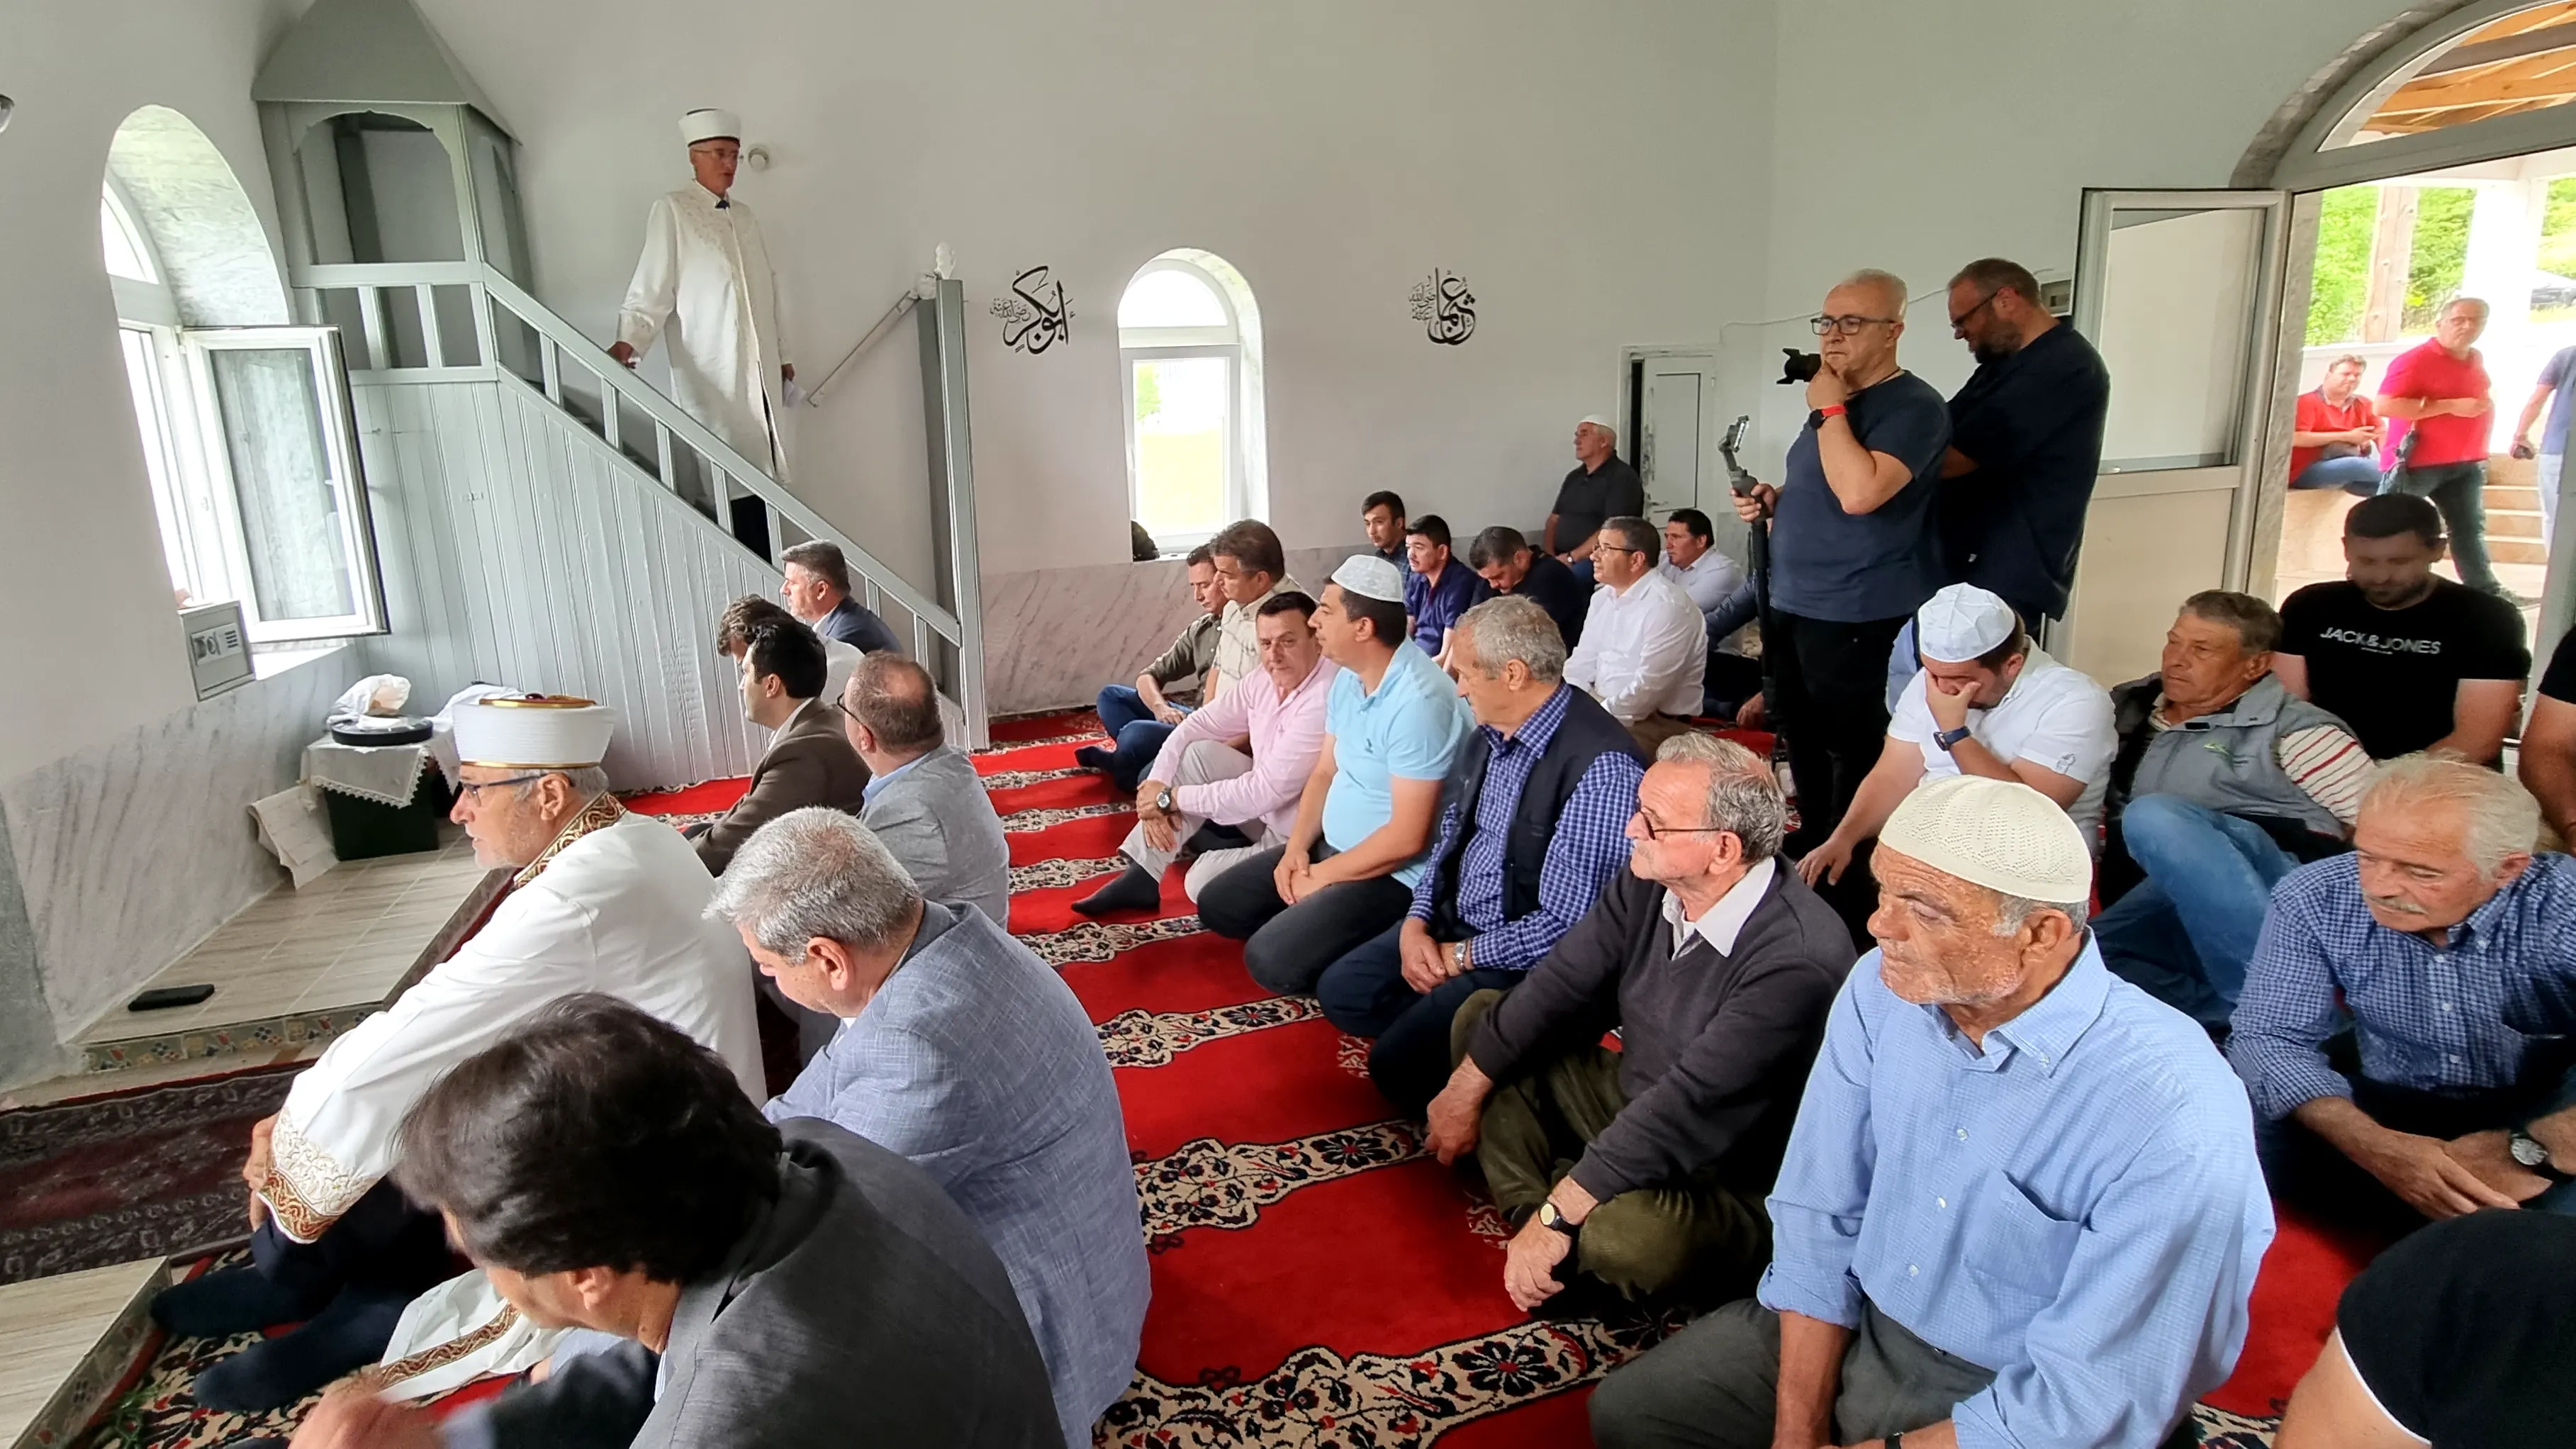 İskeçe Müftüsü Trampa, Ilıca’daki camiye yapılan saldırının toplumsal barışı hedef aldığını söyledi